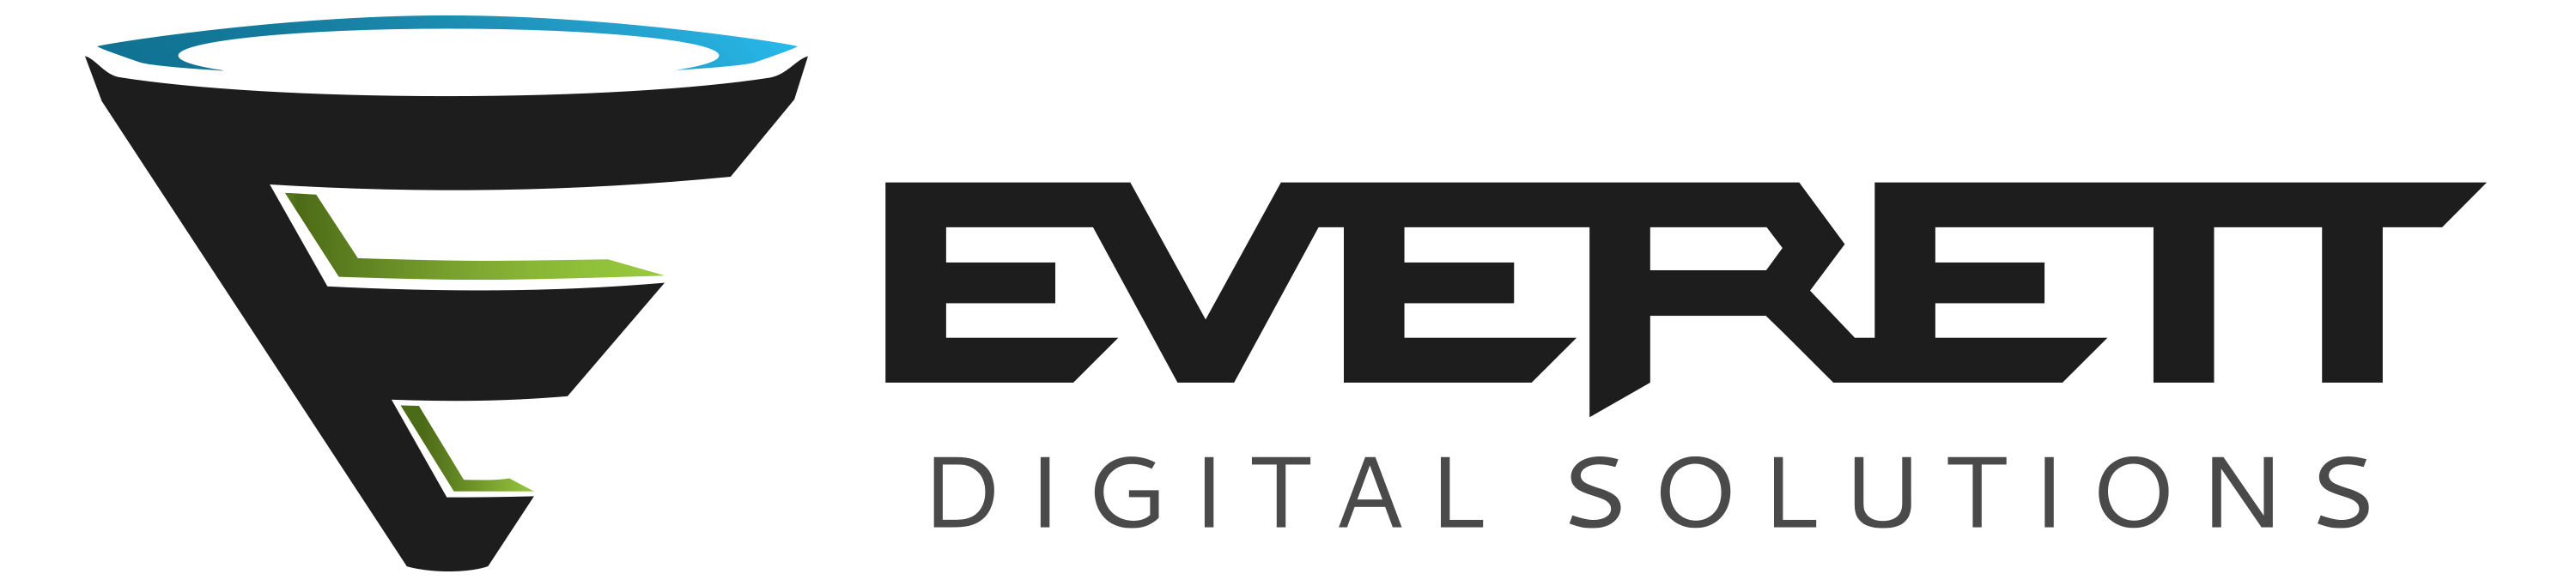 Everett Digital Solutions